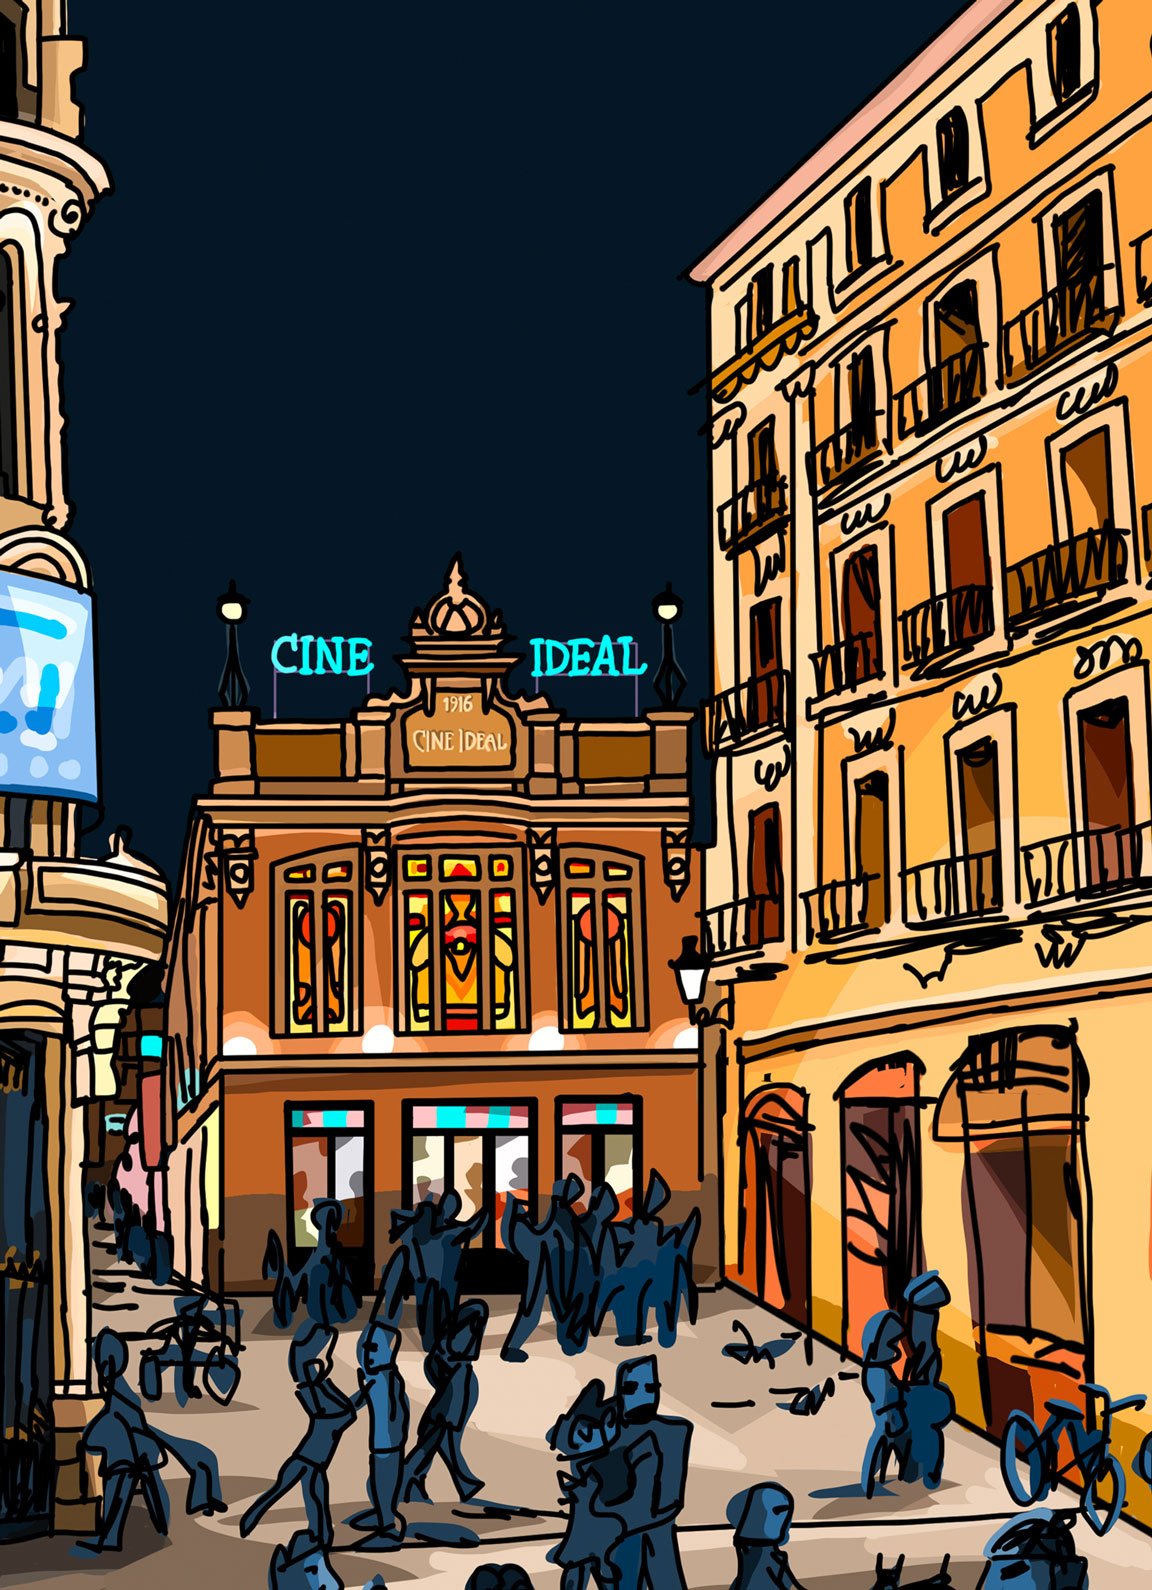 Detalle de la ilustracion del Cine Ideal de Madrid con vidrieras modernistas